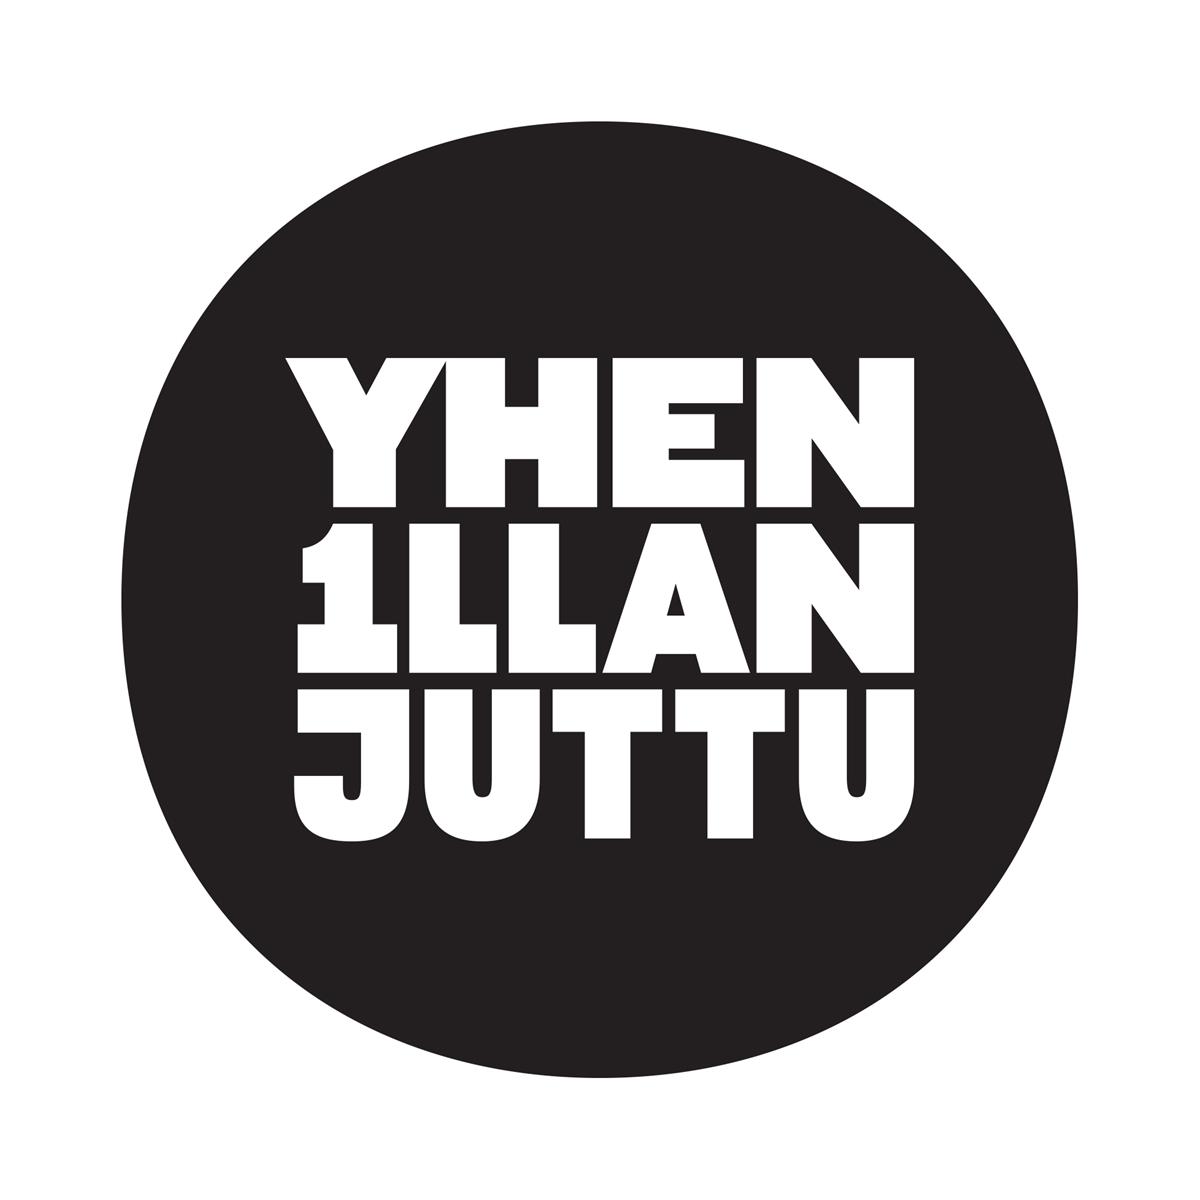 yhen_illan_juttu_logo_musta.jpg